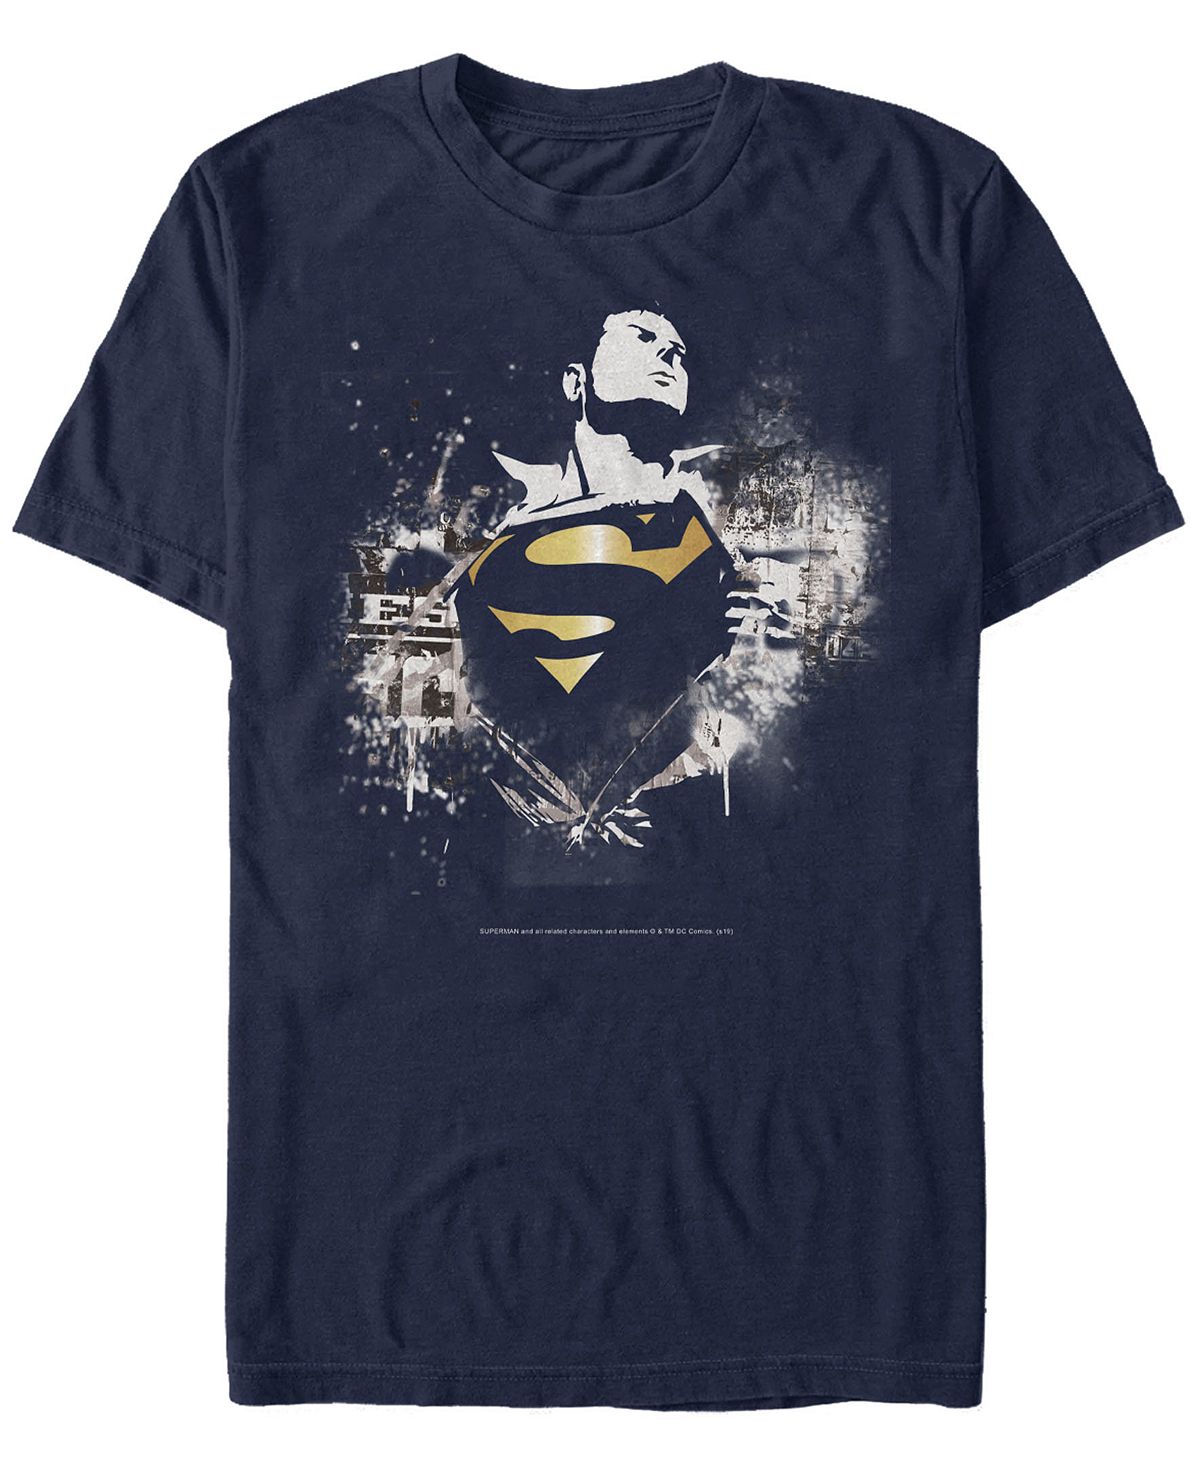 Мужская футболка с коротким рукавом с логотипом супермена dc dc Fifth Sun, синий мужская футболка dc batman gotham guardian с коротким рукавом fifth sun черный